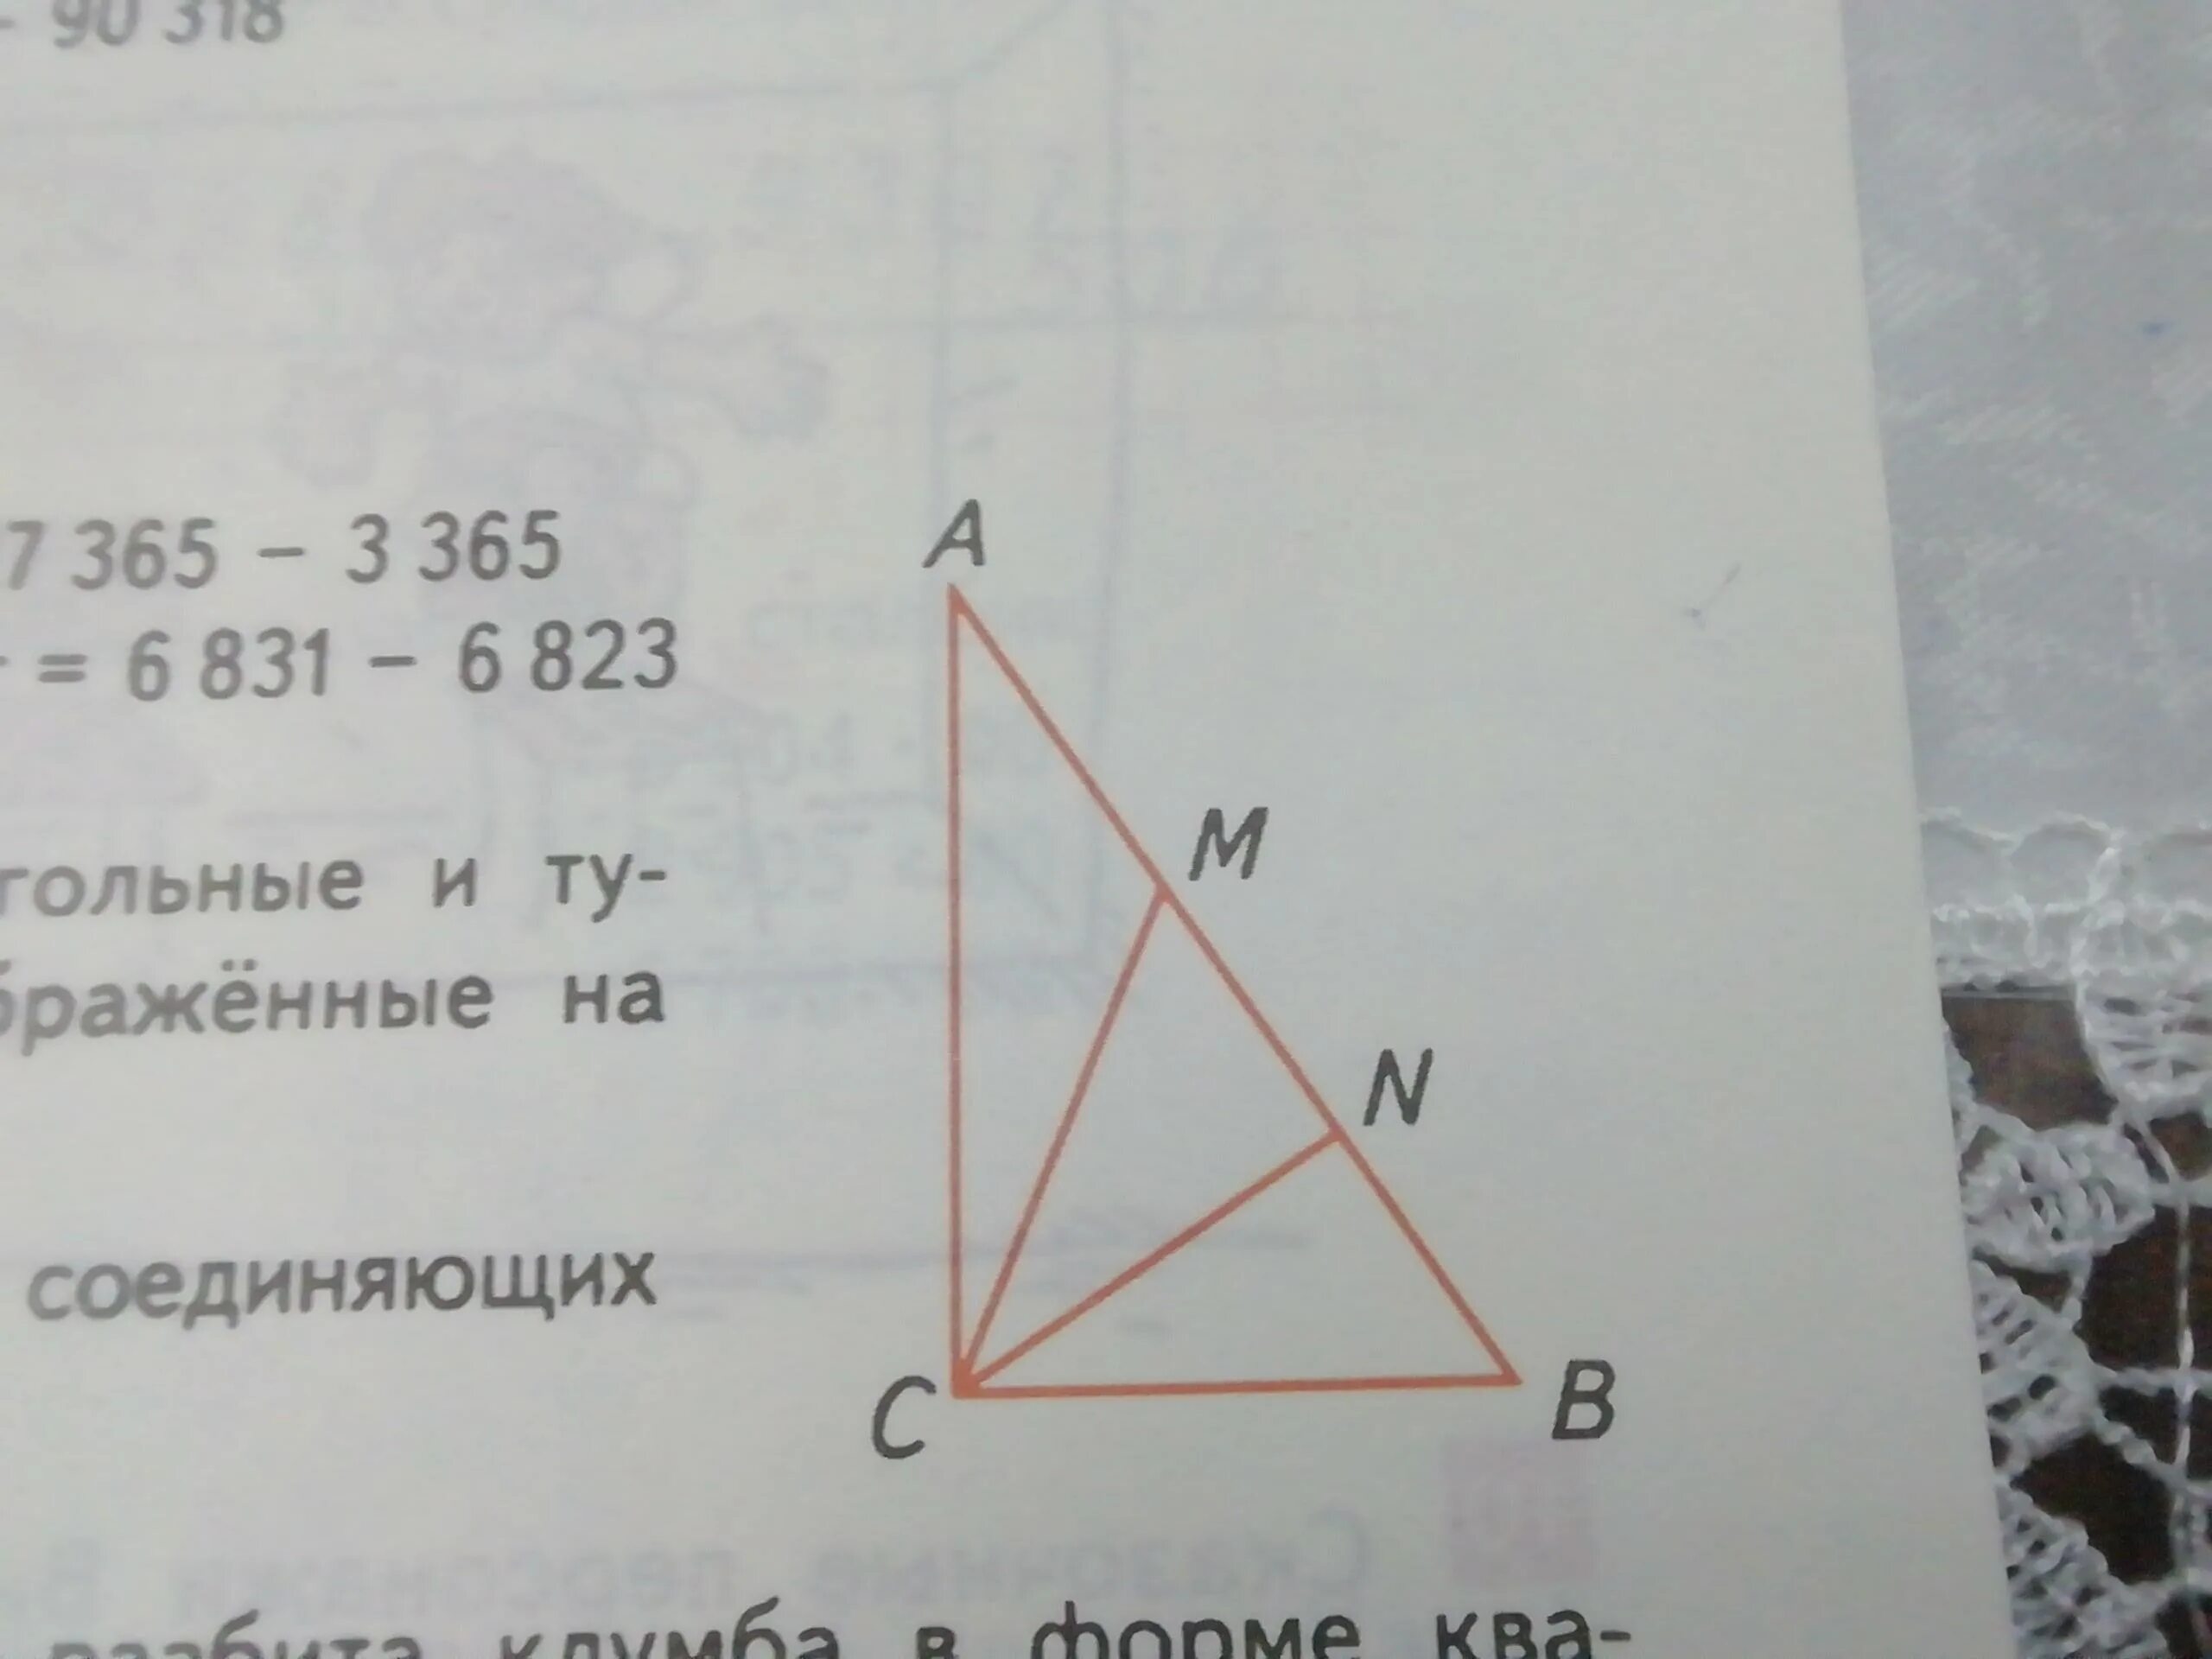 На чертеже изображен треугольник. Выпиши название всех отрезков. Выпиши названия всех прямоугольных остроугольных и тупоугольных. Выпиши названия всех прямоугольных остроугольных.